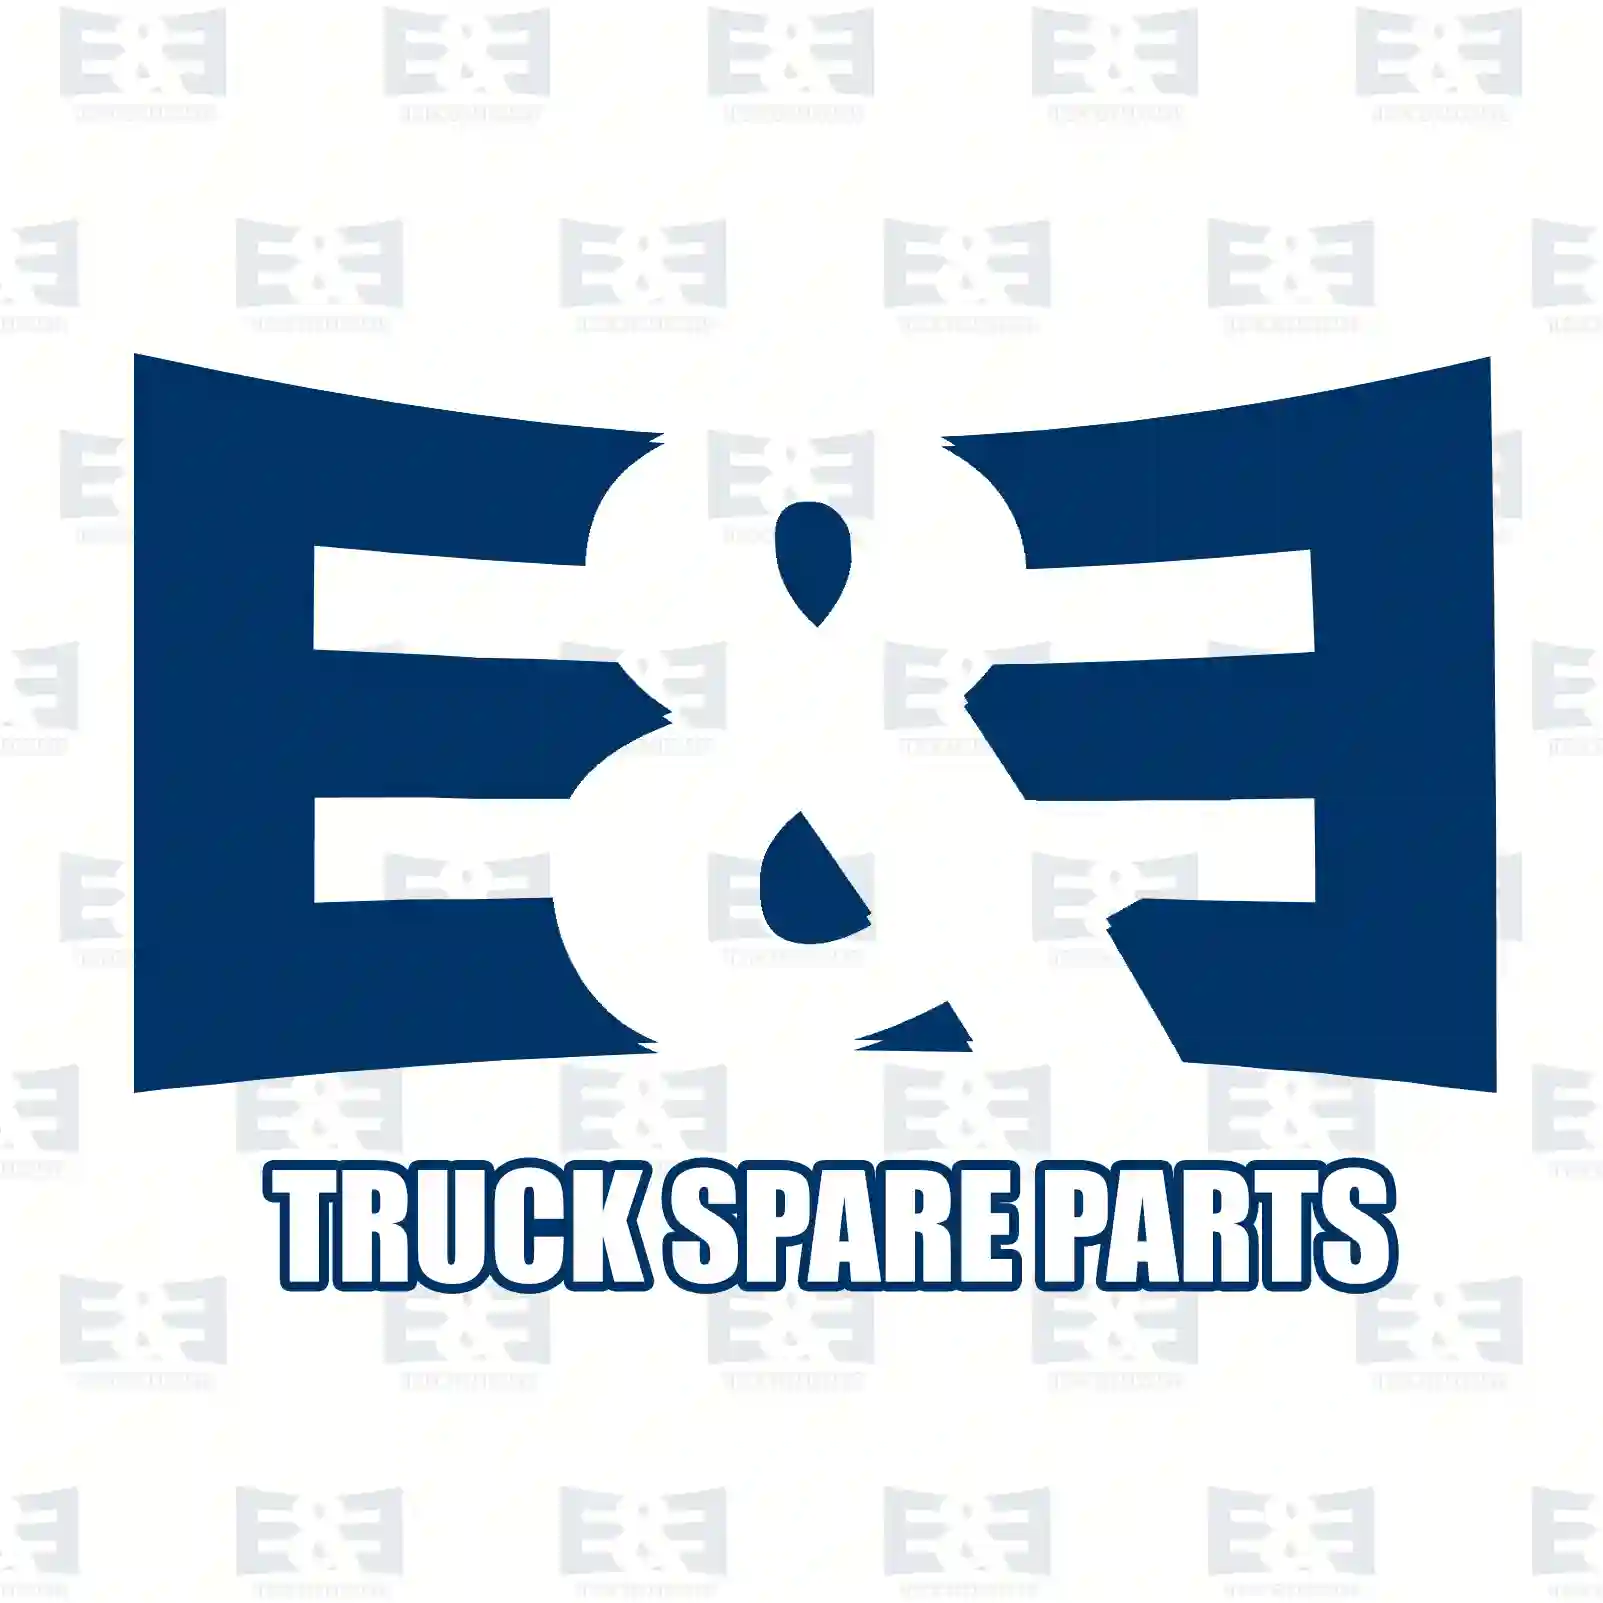 Shifting unit, 2E2278434, 21847980, 22230455, 22583048 ||  2E2278434 E&E Truck Spare Parts | Truck Spare Parts, Auotomotive Spare Parts Shifting unit, 2E2278434, 21847980, 22230455, 22583048 ||  2E2278434 E&E Truck Spare Parts | Truck Spare Parts, Auotomotive Spare Parts